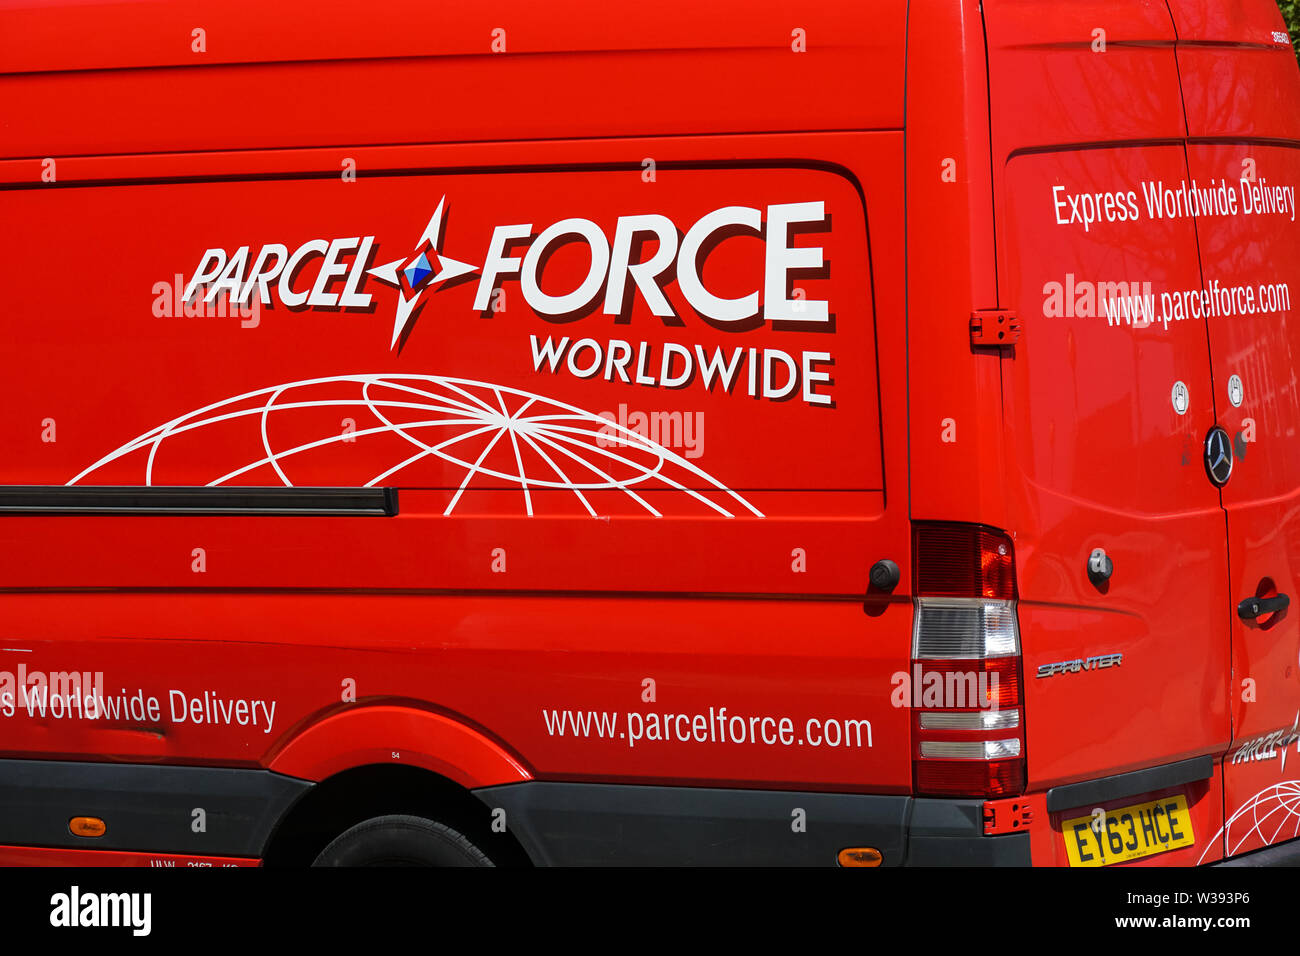 Camion de livraison de colis vigueur, Londres Angleterre Royaume-Uni UK Banque D'Images